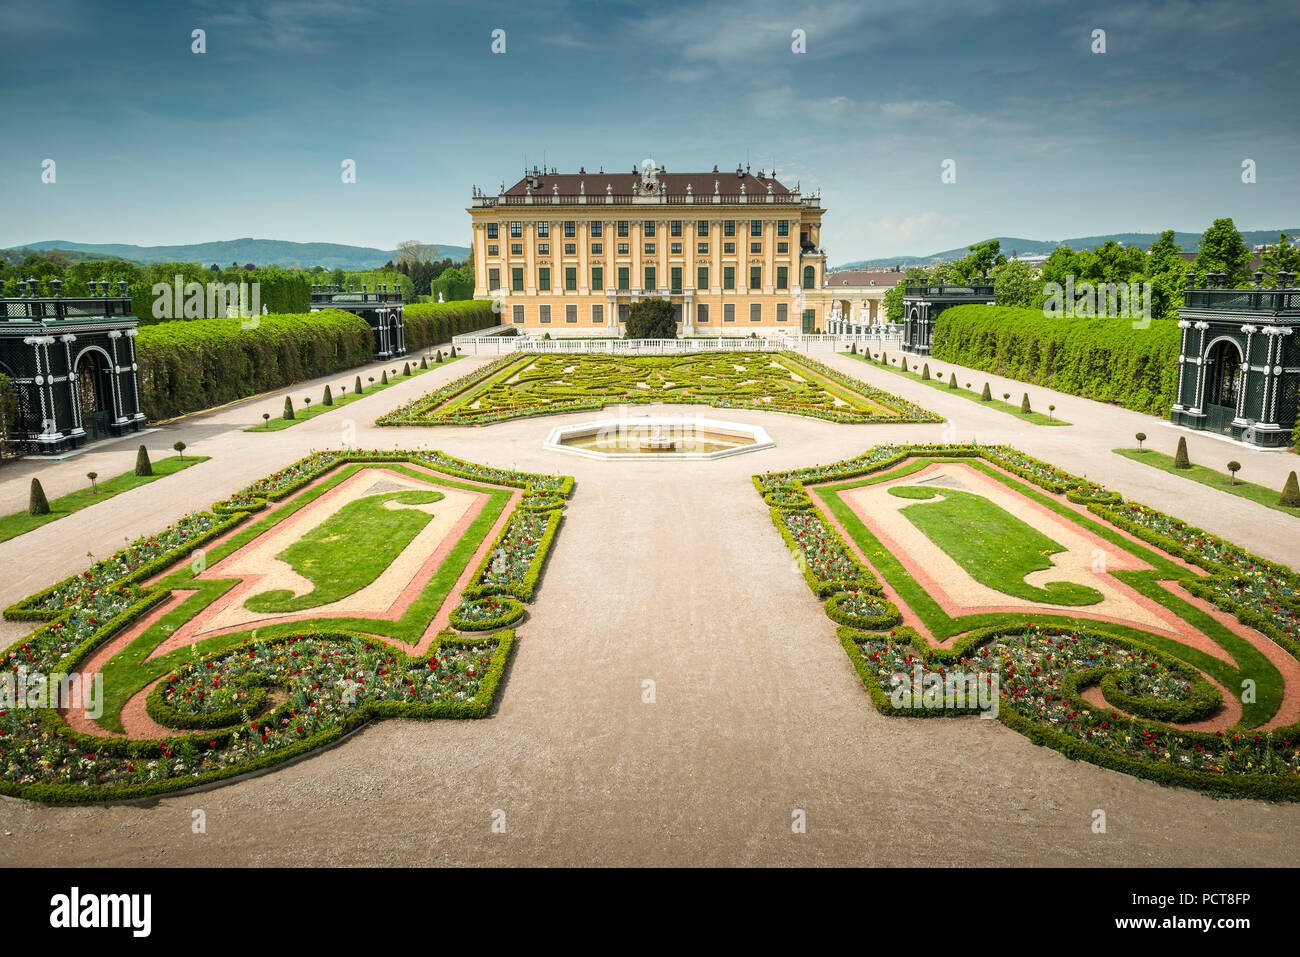 Europa, Österreich, Wien, Schloss, Palast, Schönbrunn, Vienna, Austria, architecture, capital Stock Photo